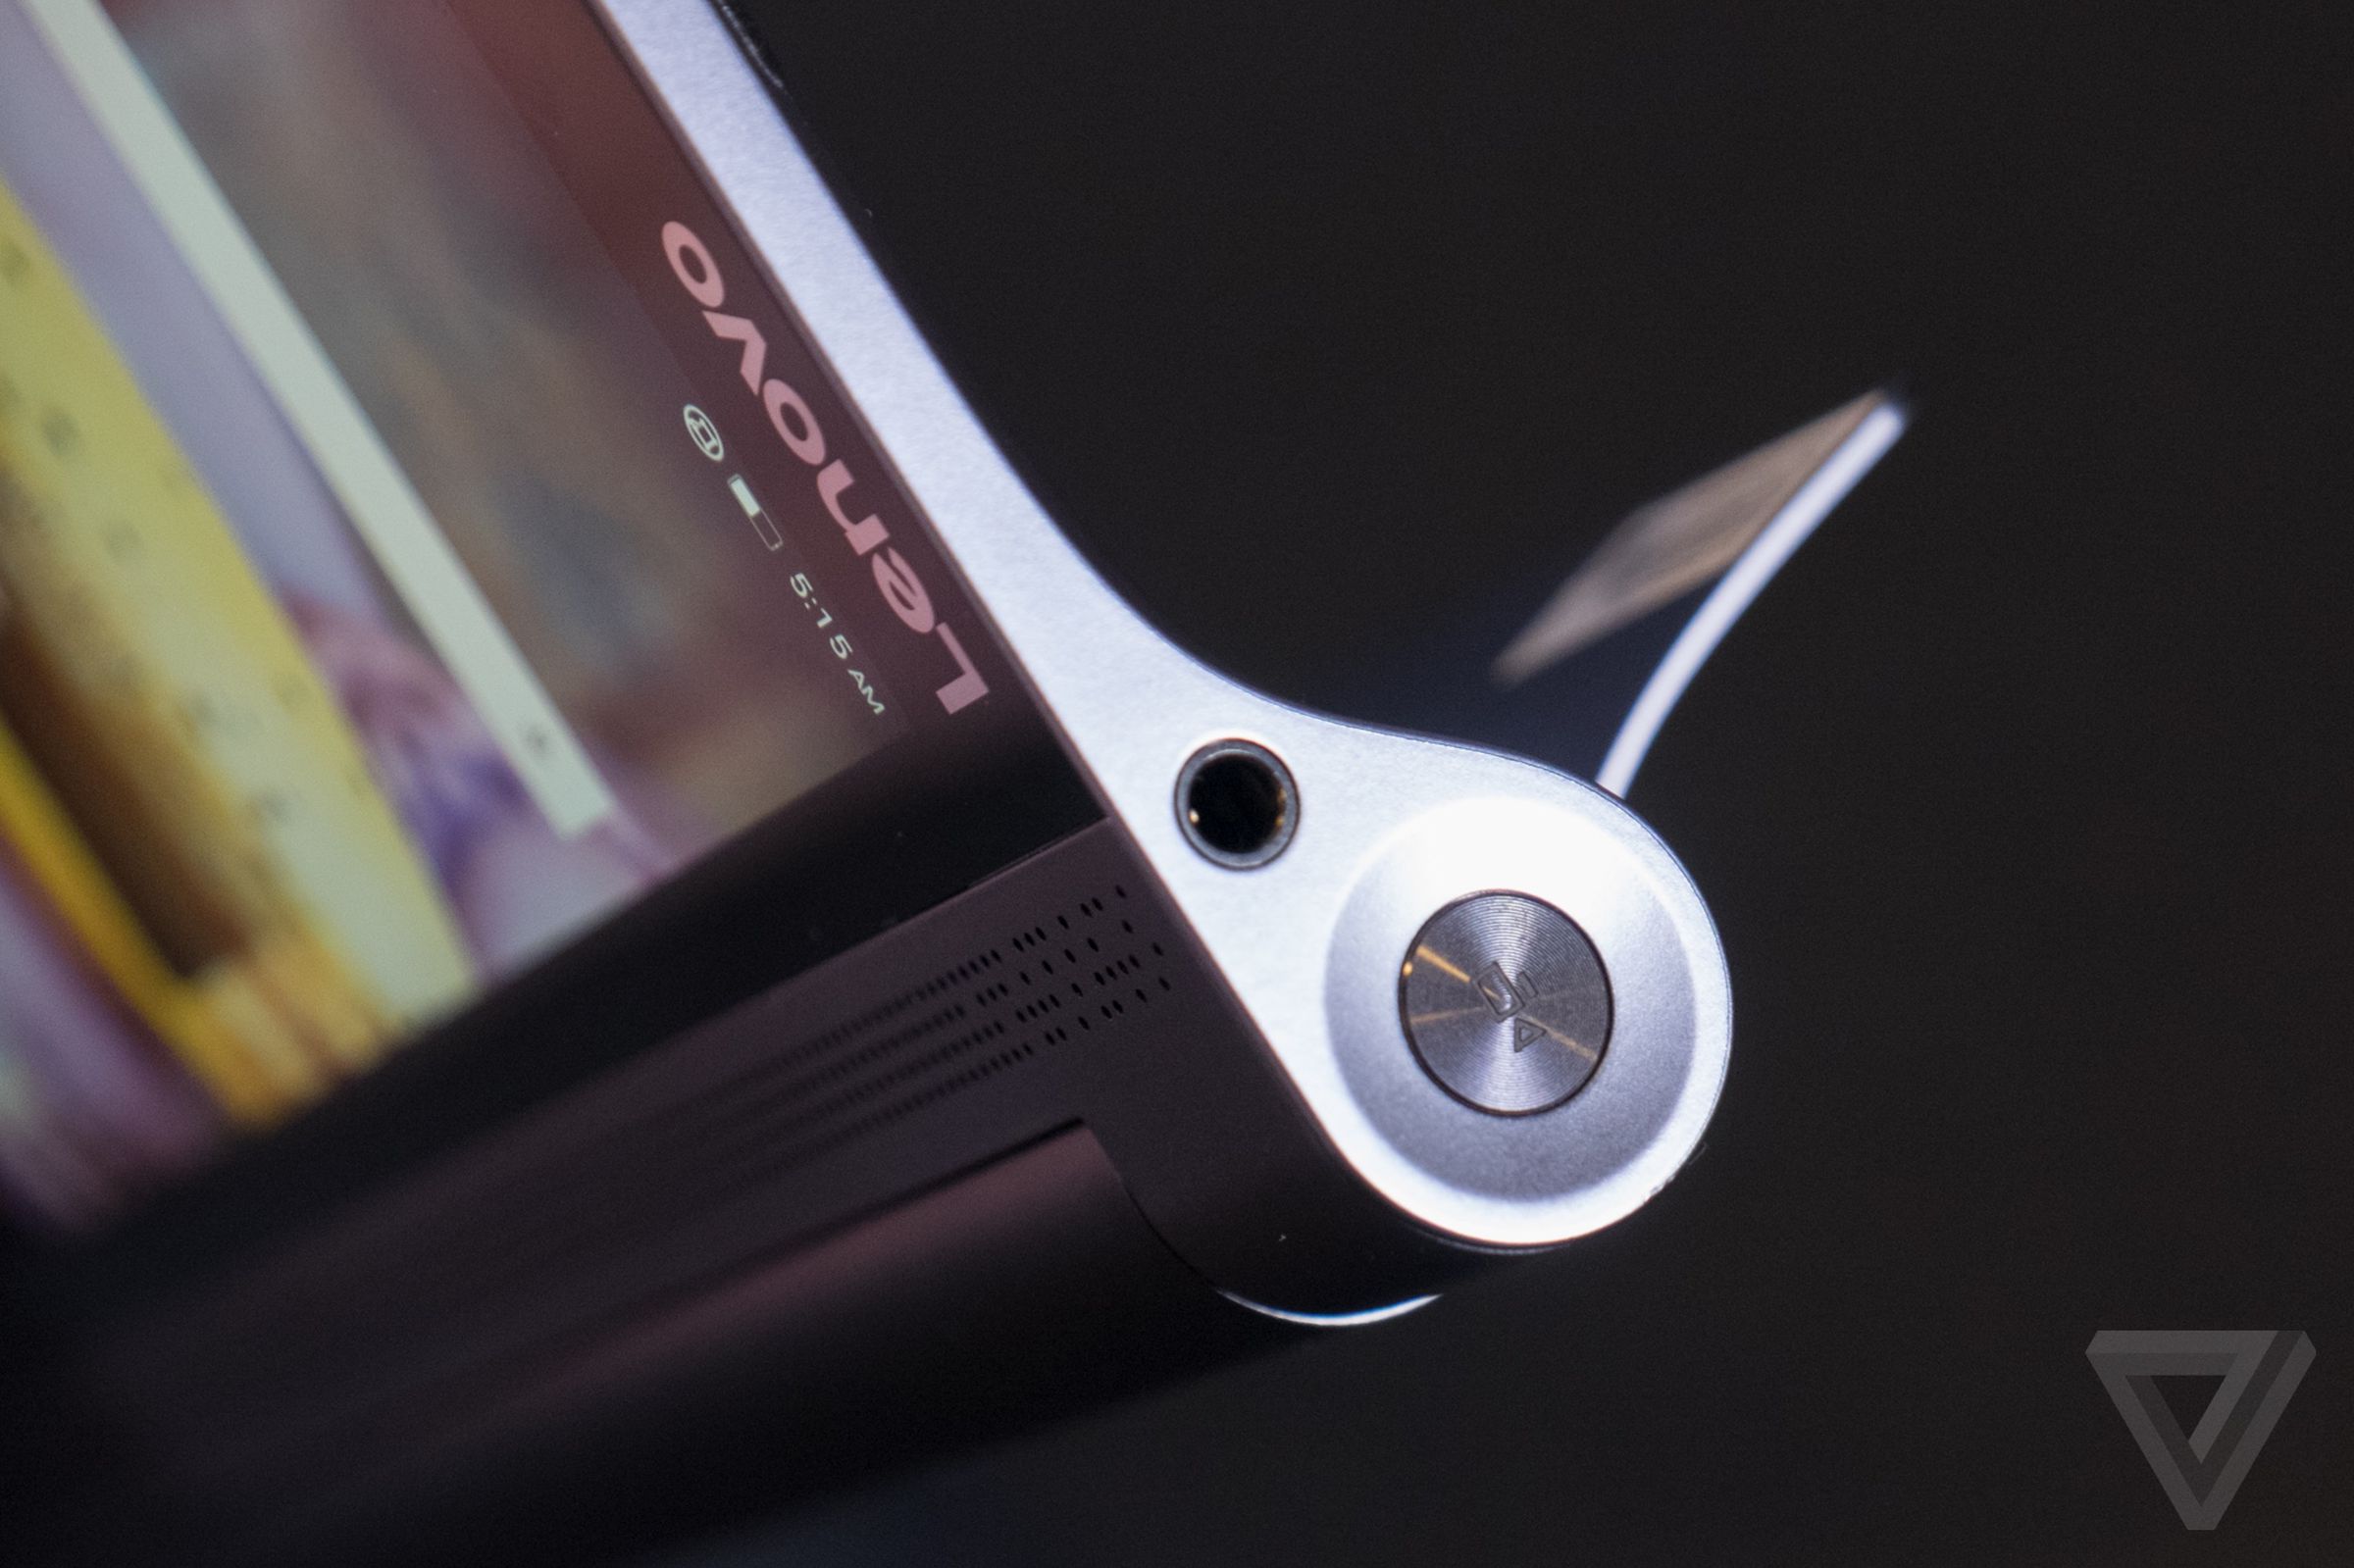 Lenovo Yoga Tab 3 and Yoga Tab 3 Pro hands-on photos